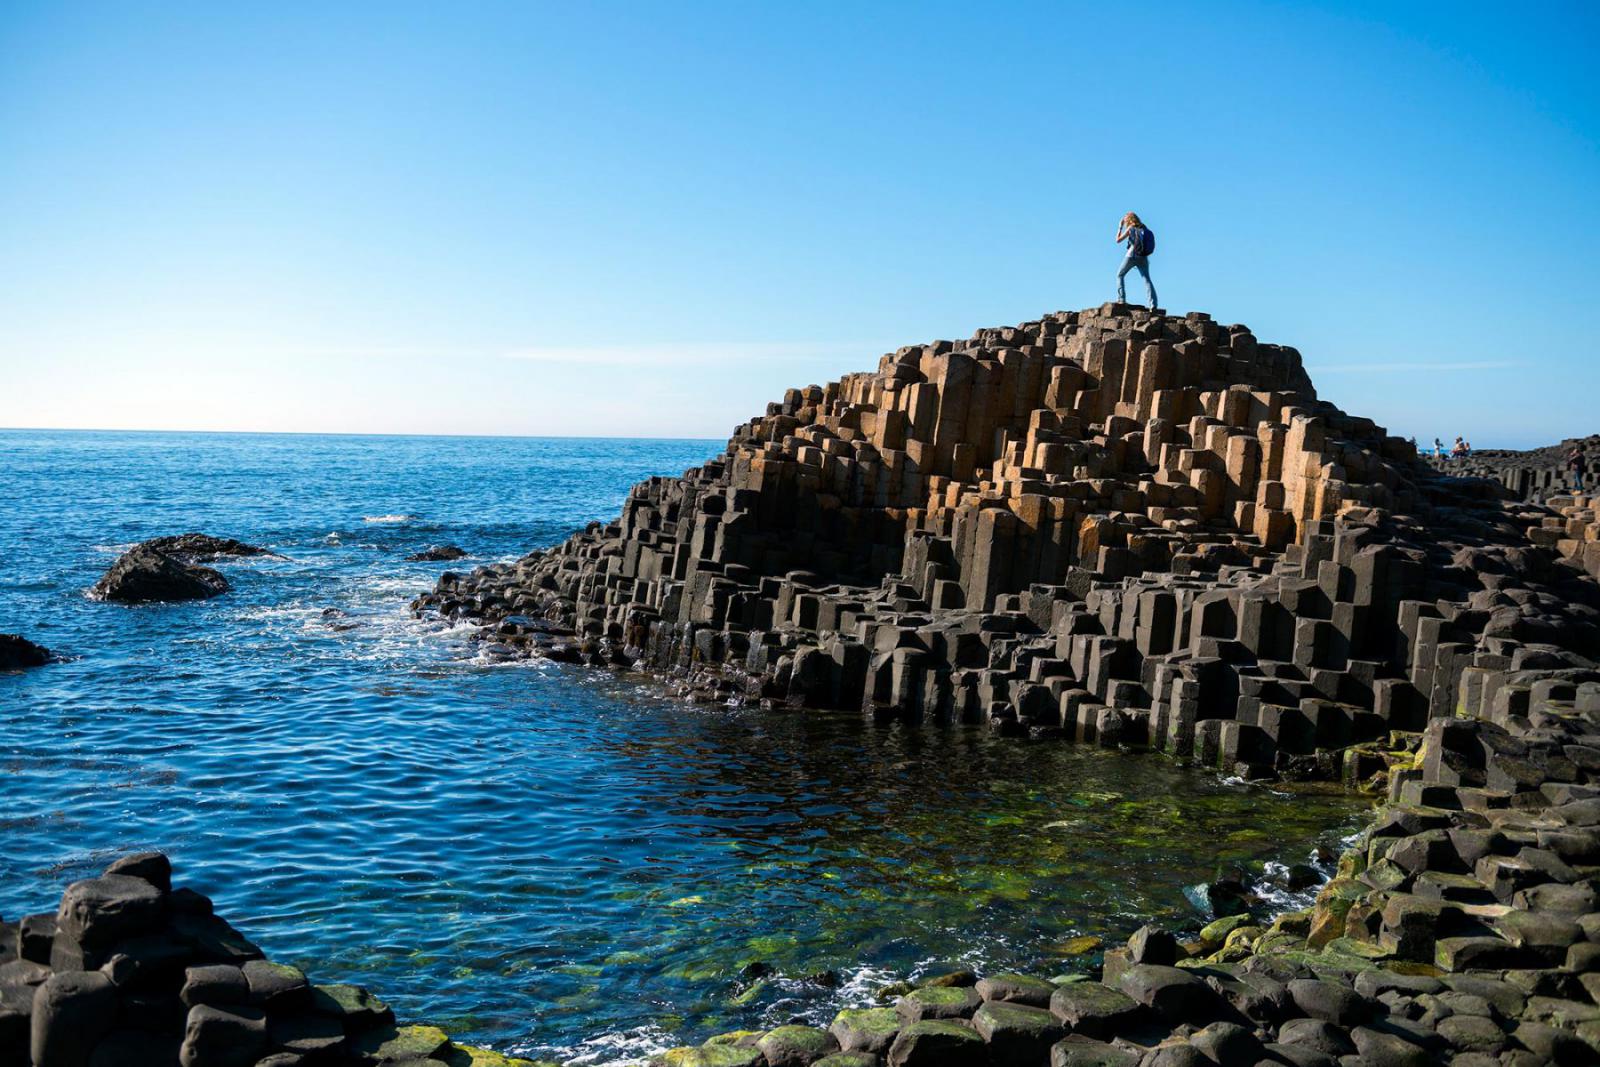 De Giant's Causeway met de basaltstenen en het helderblauwe water | Joel Carrilet